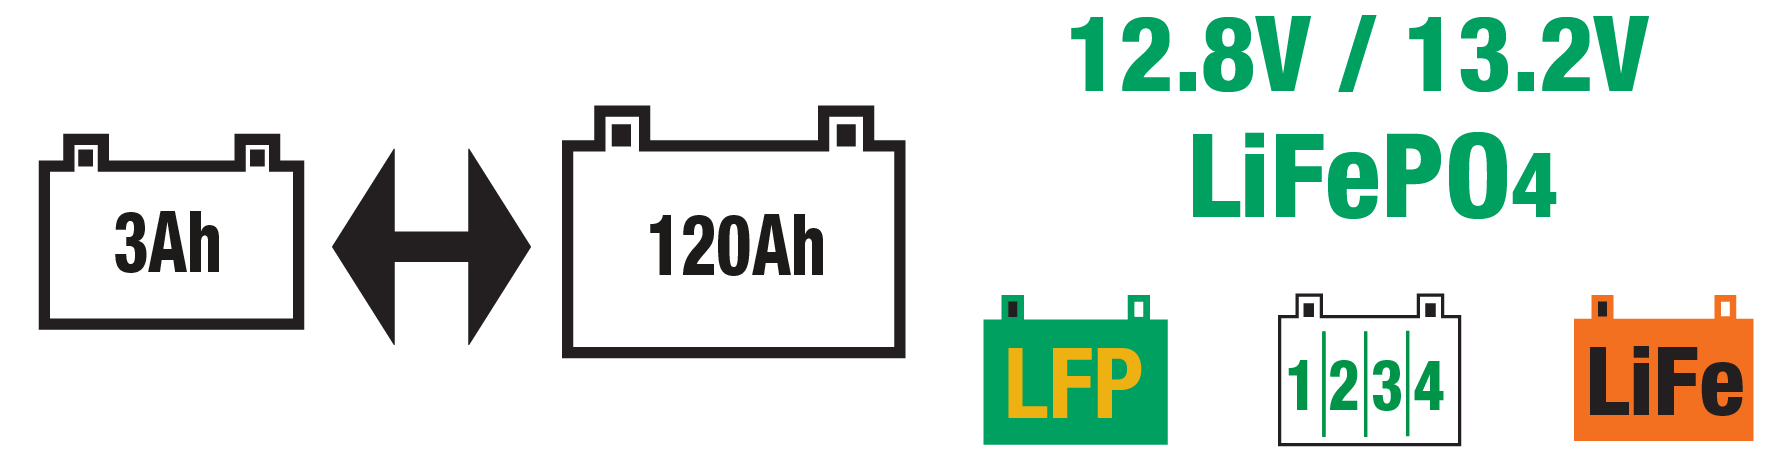 le chargeur lithium est idéal pour les batteries LiFePO4/LFP